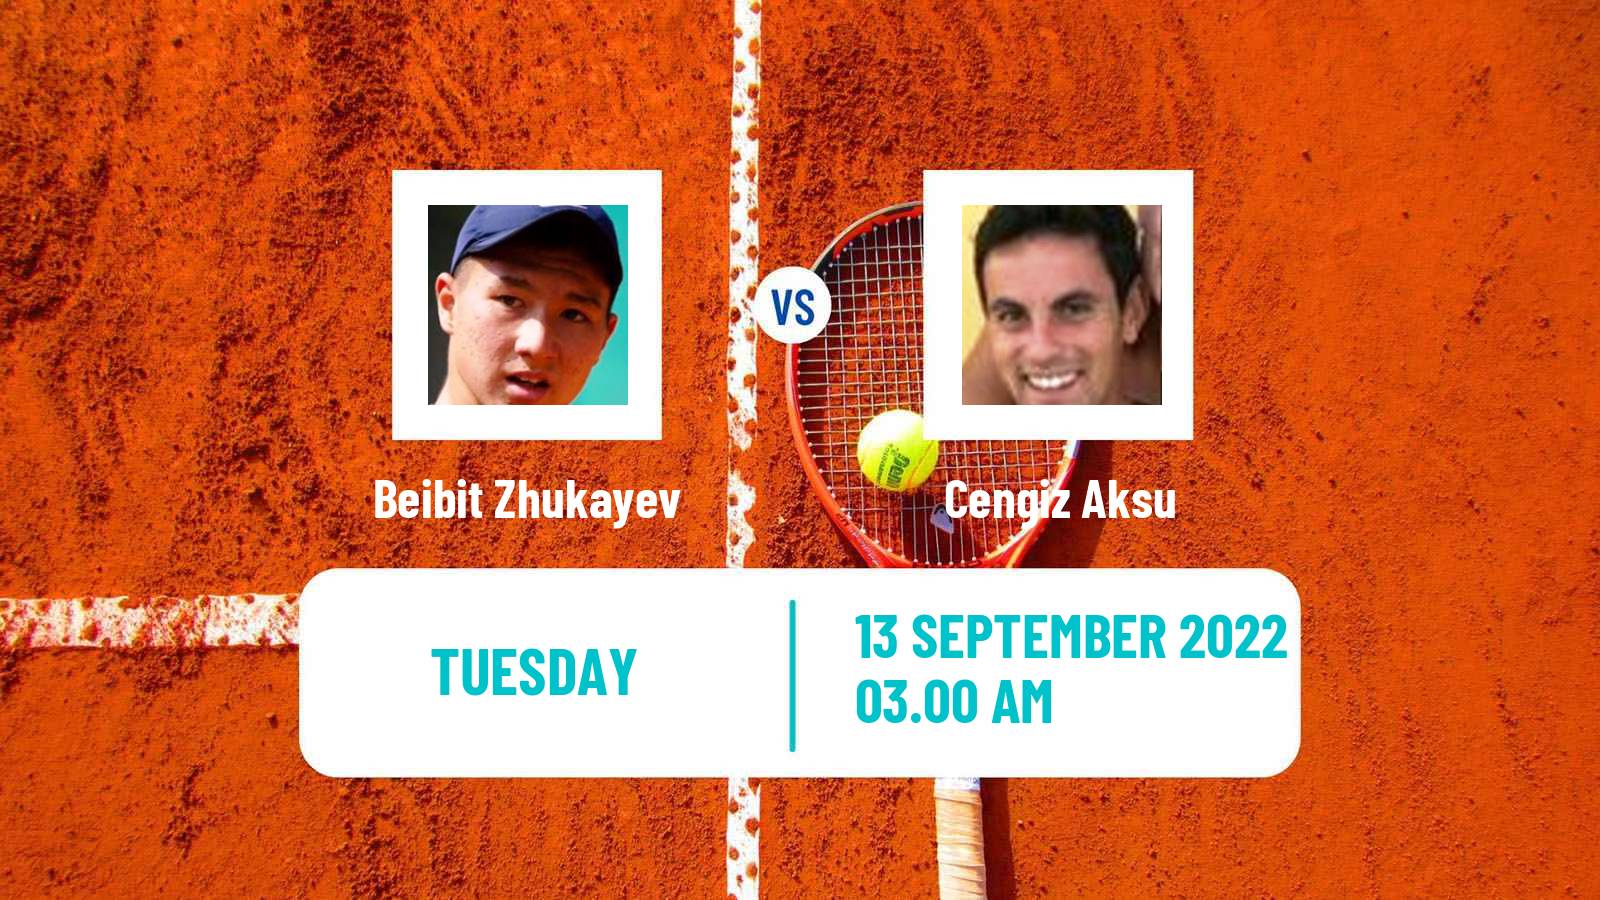 Tennis ATP Challenger Beibit Zhukayev - Cengiz Aksu